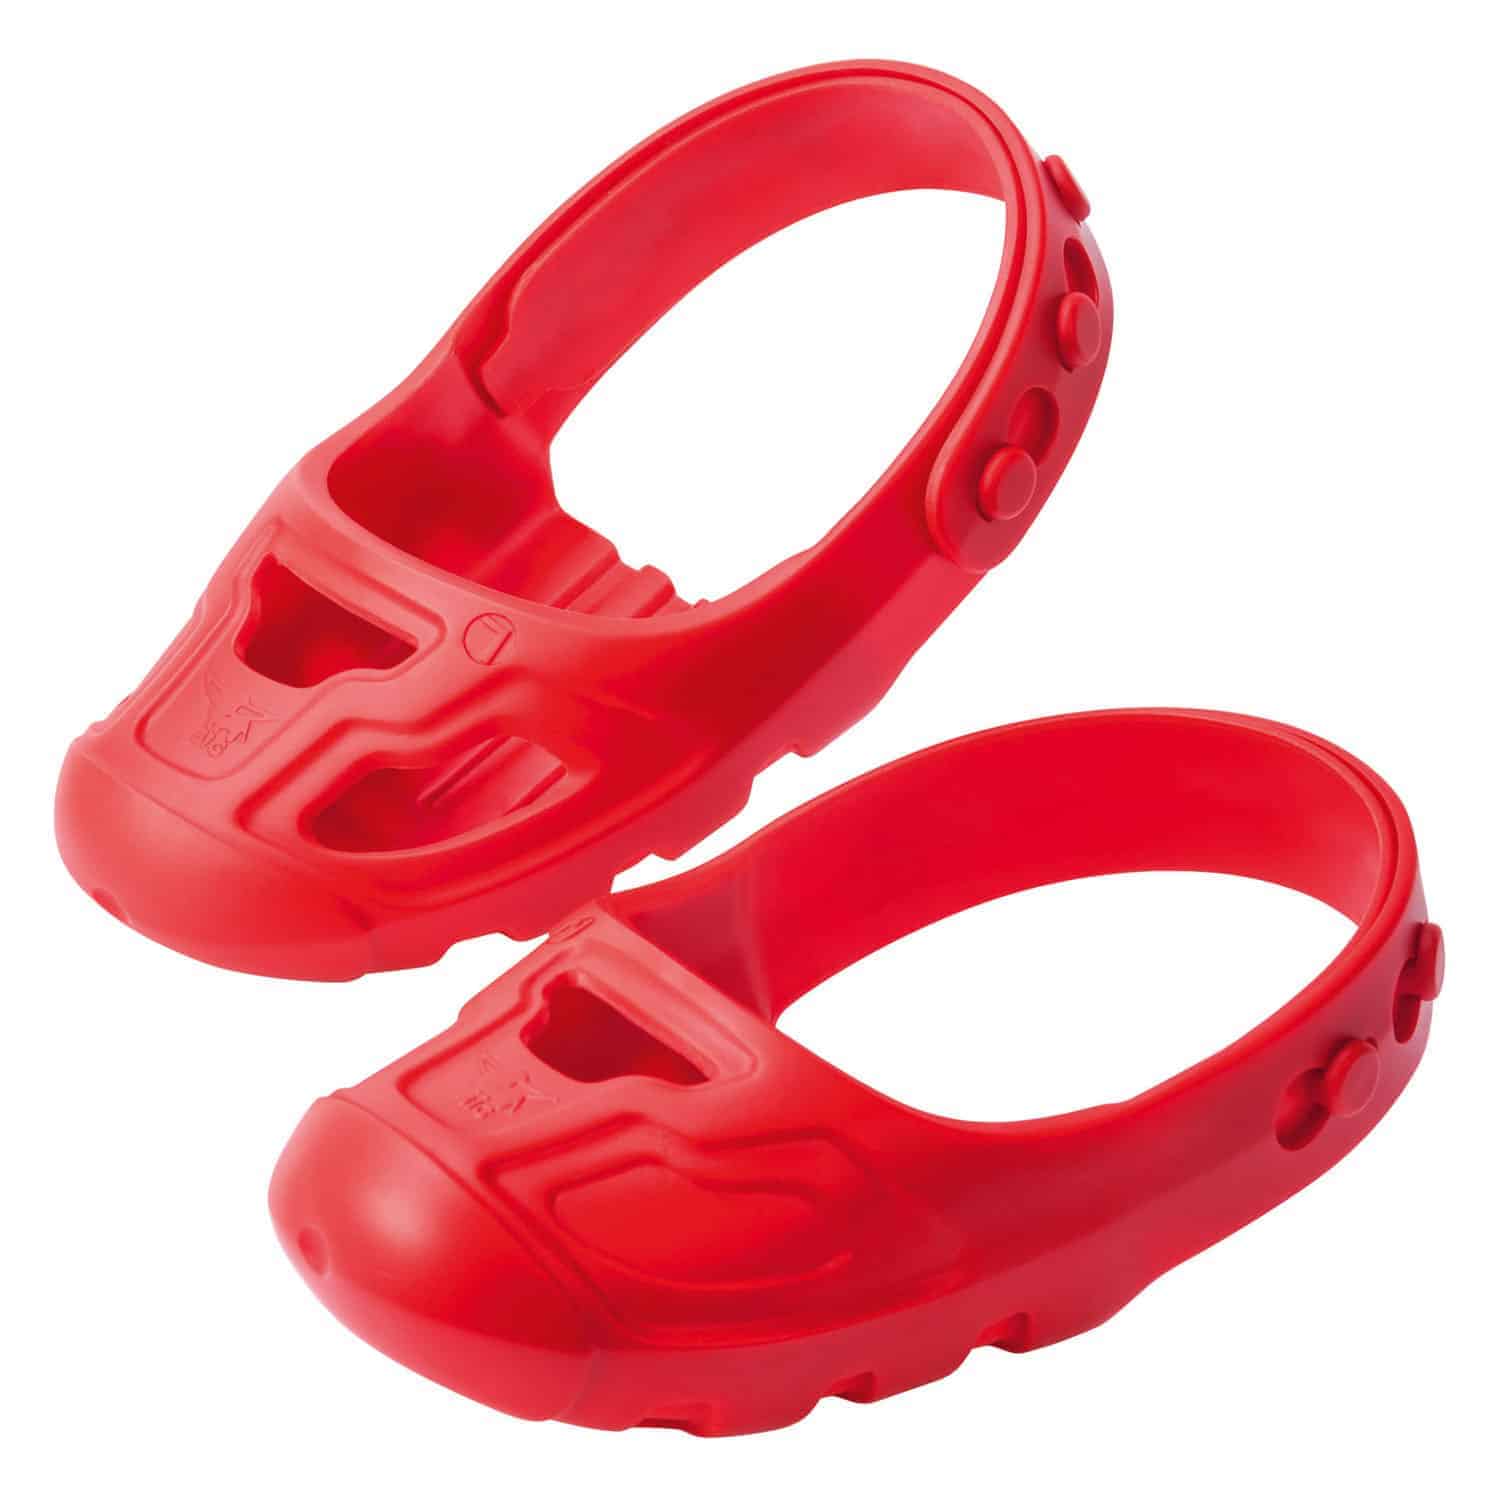 BIG cipővédő piros színű